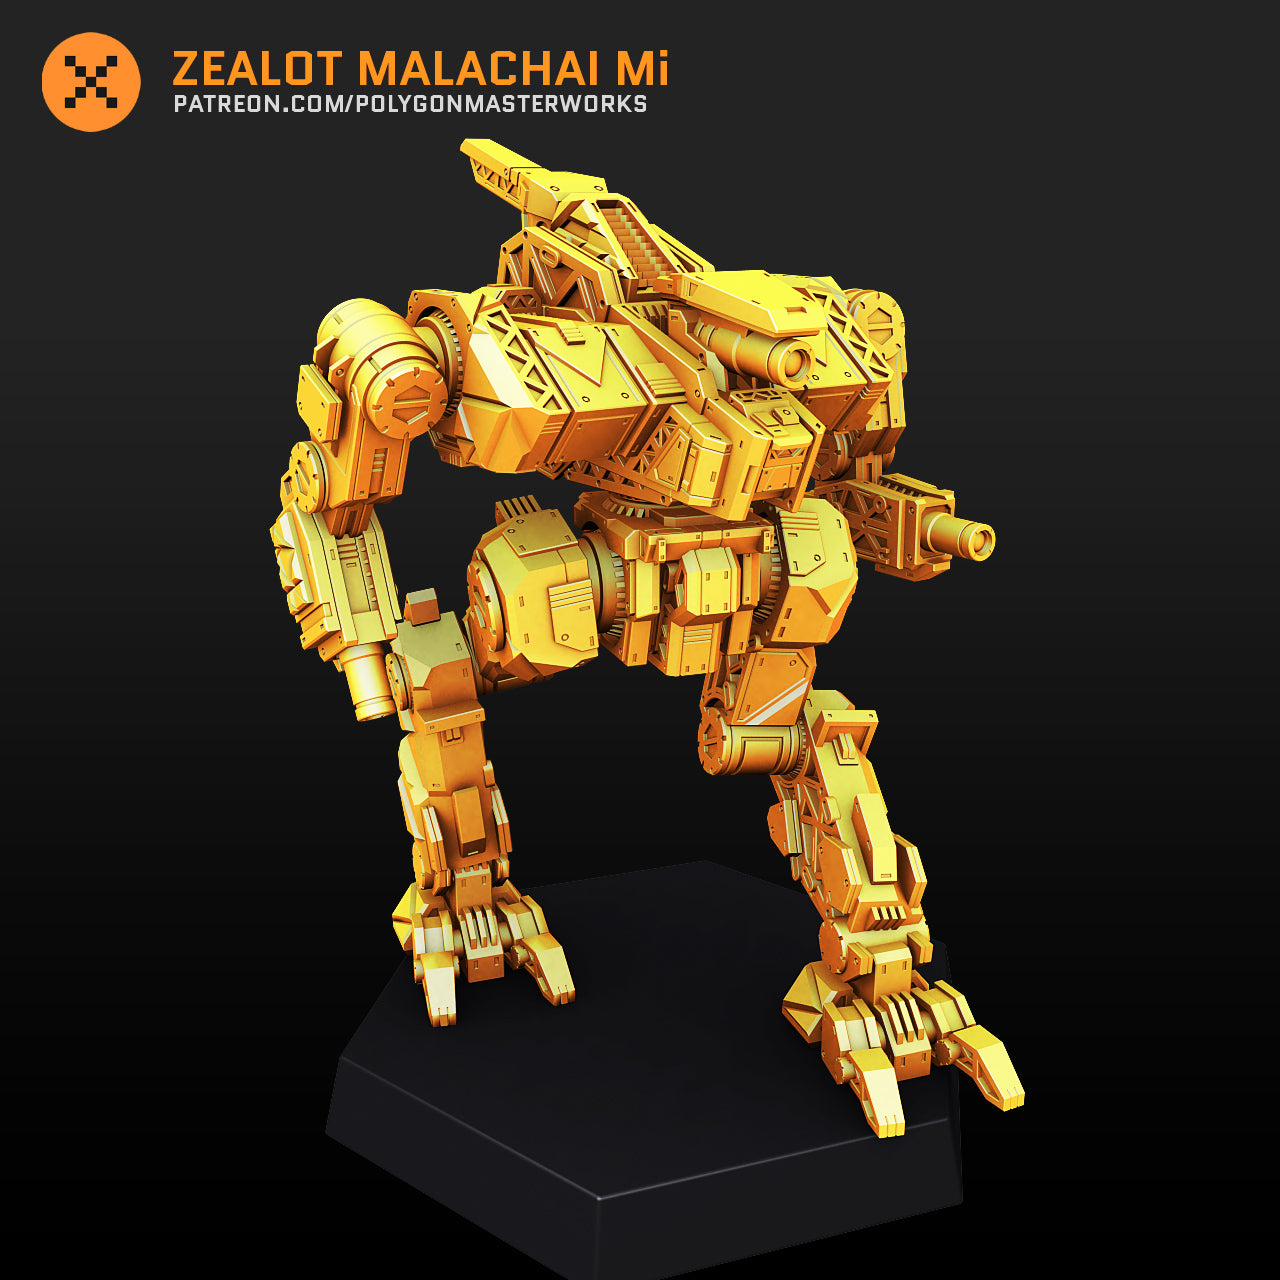 Zealot Malachai Mi (By PMW) Alternate Battletch Mechwarrior Miniatures